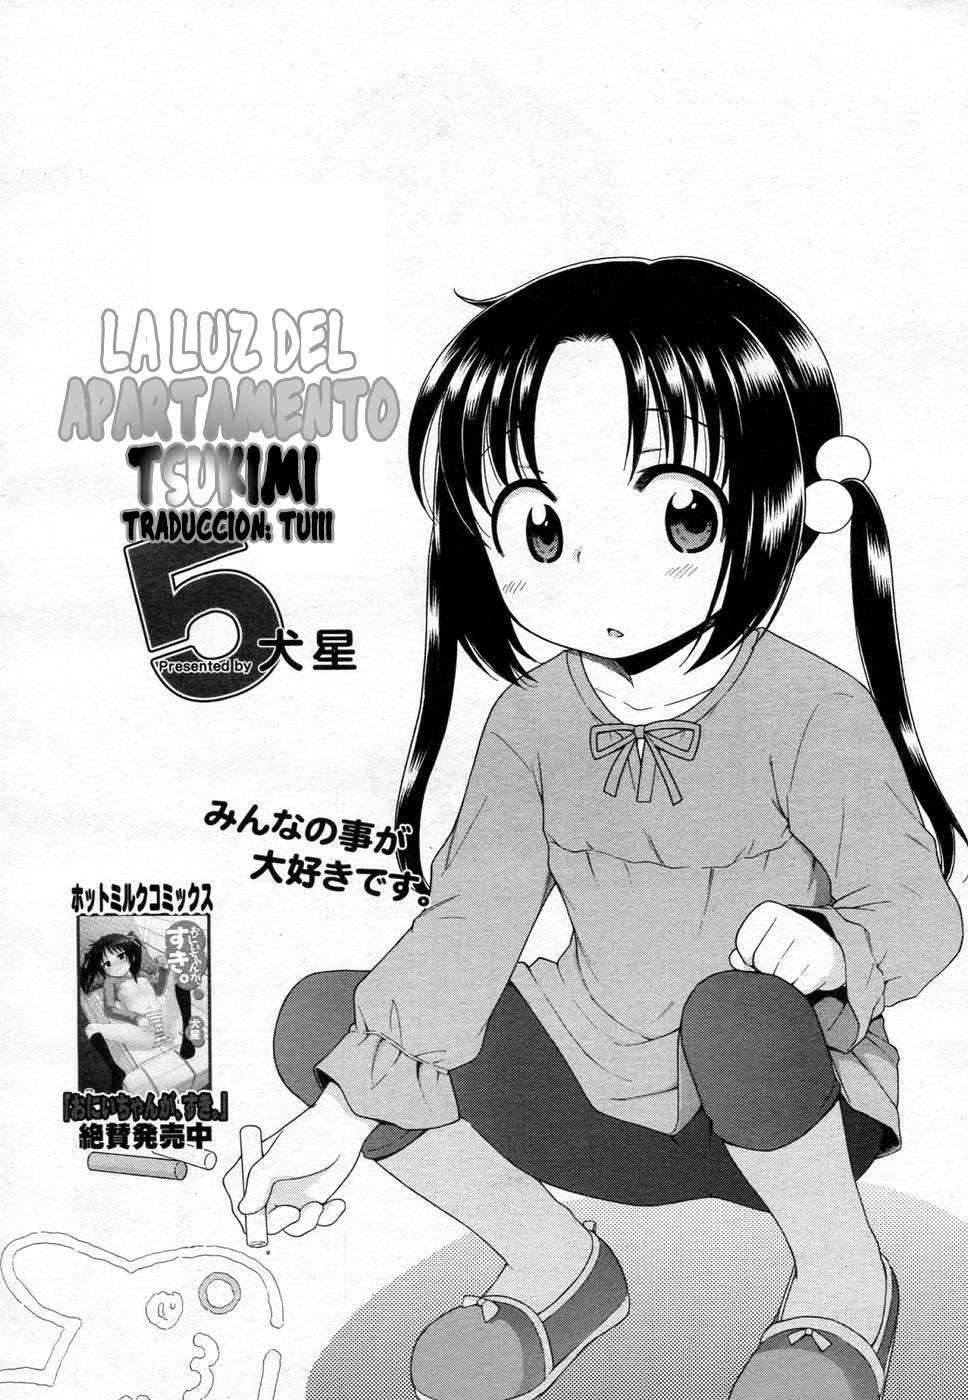 Tsukimisou No Akari (La Luz Del Apartamento Tsukimi) Chapter-5 - 1